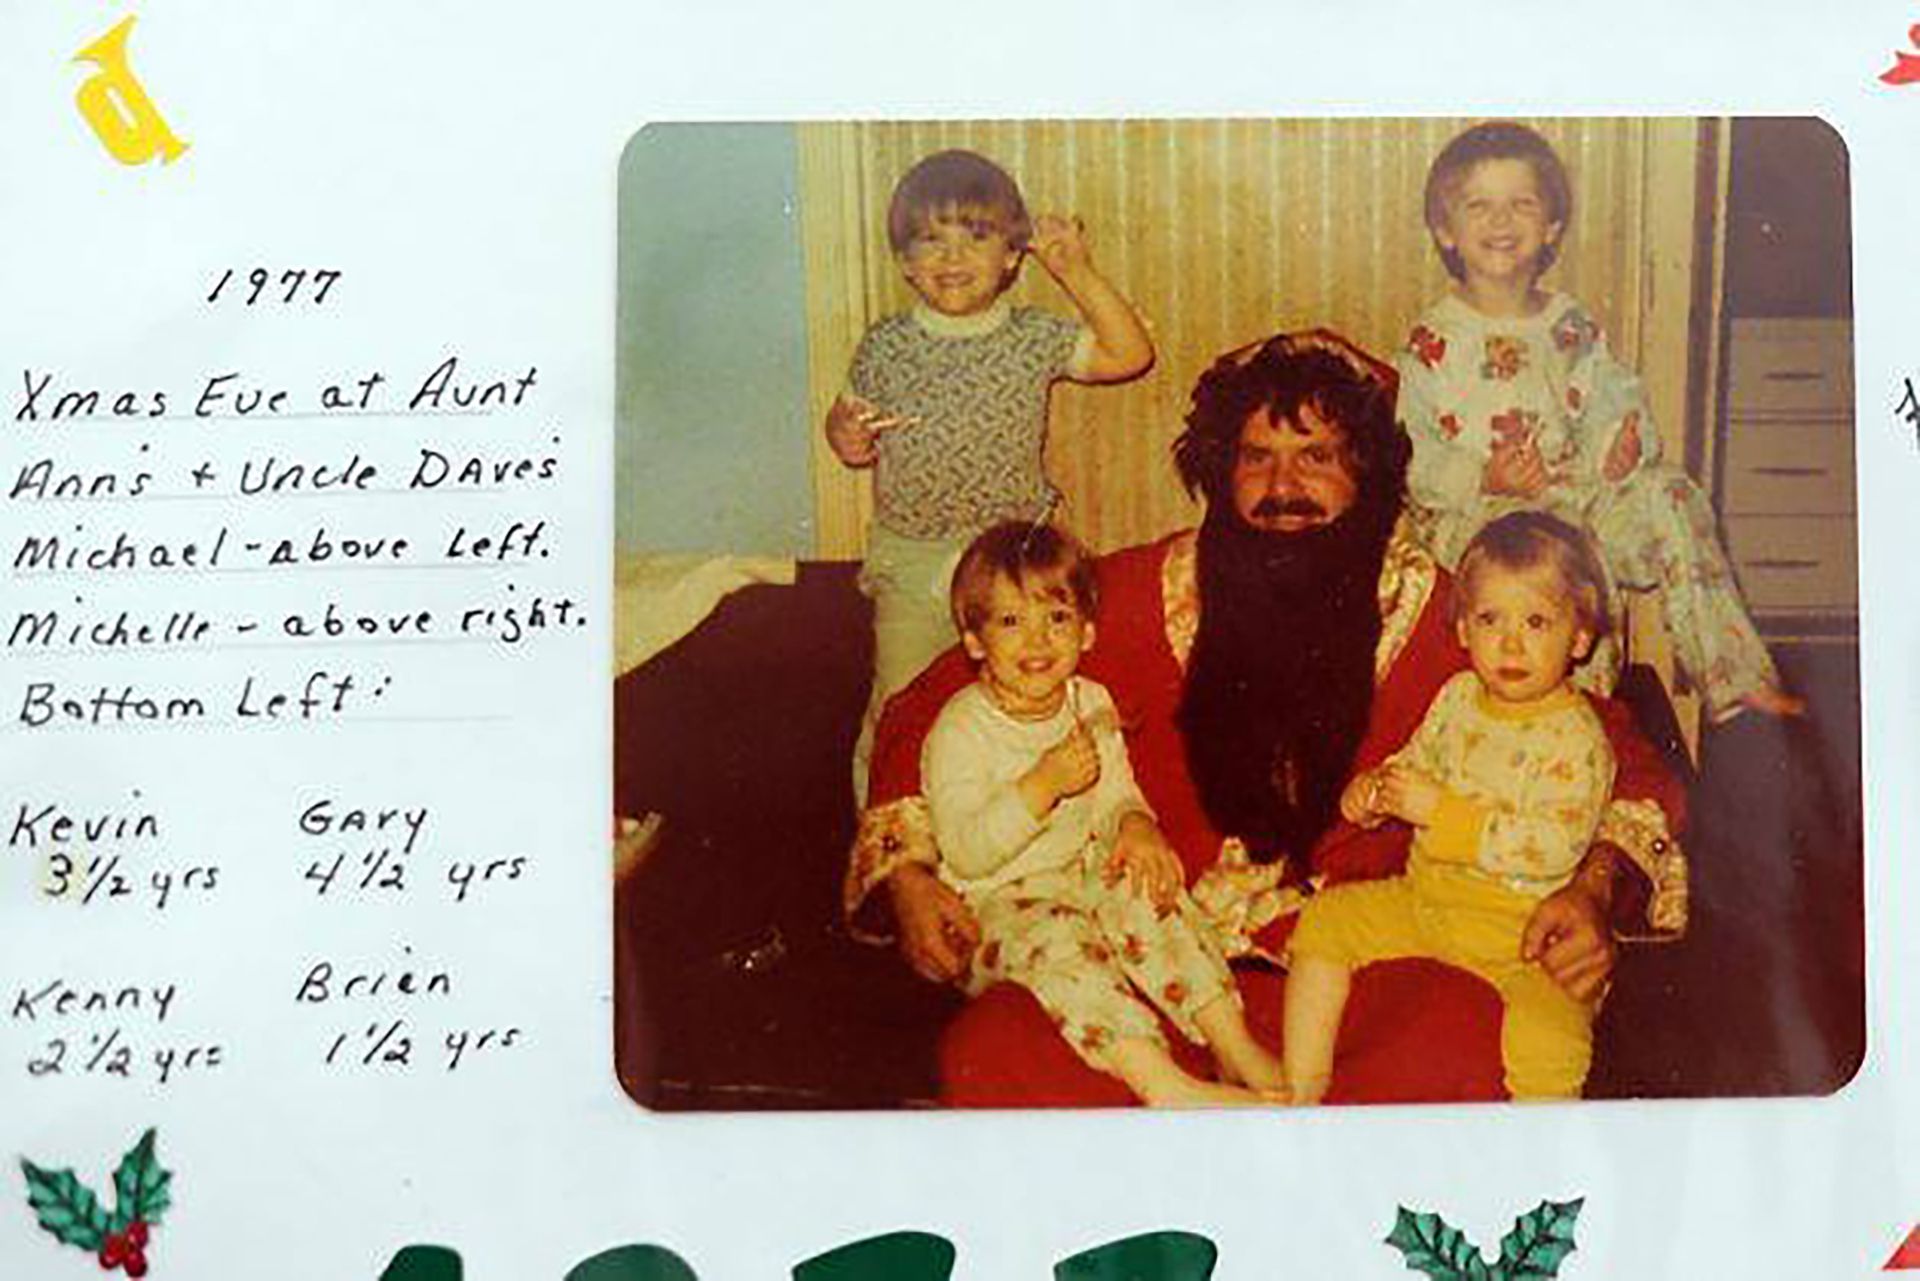 Navidad de 1977, David vestido de Papá Noel junto a sus hijos Kevin, Gary, Kenny y Brian.